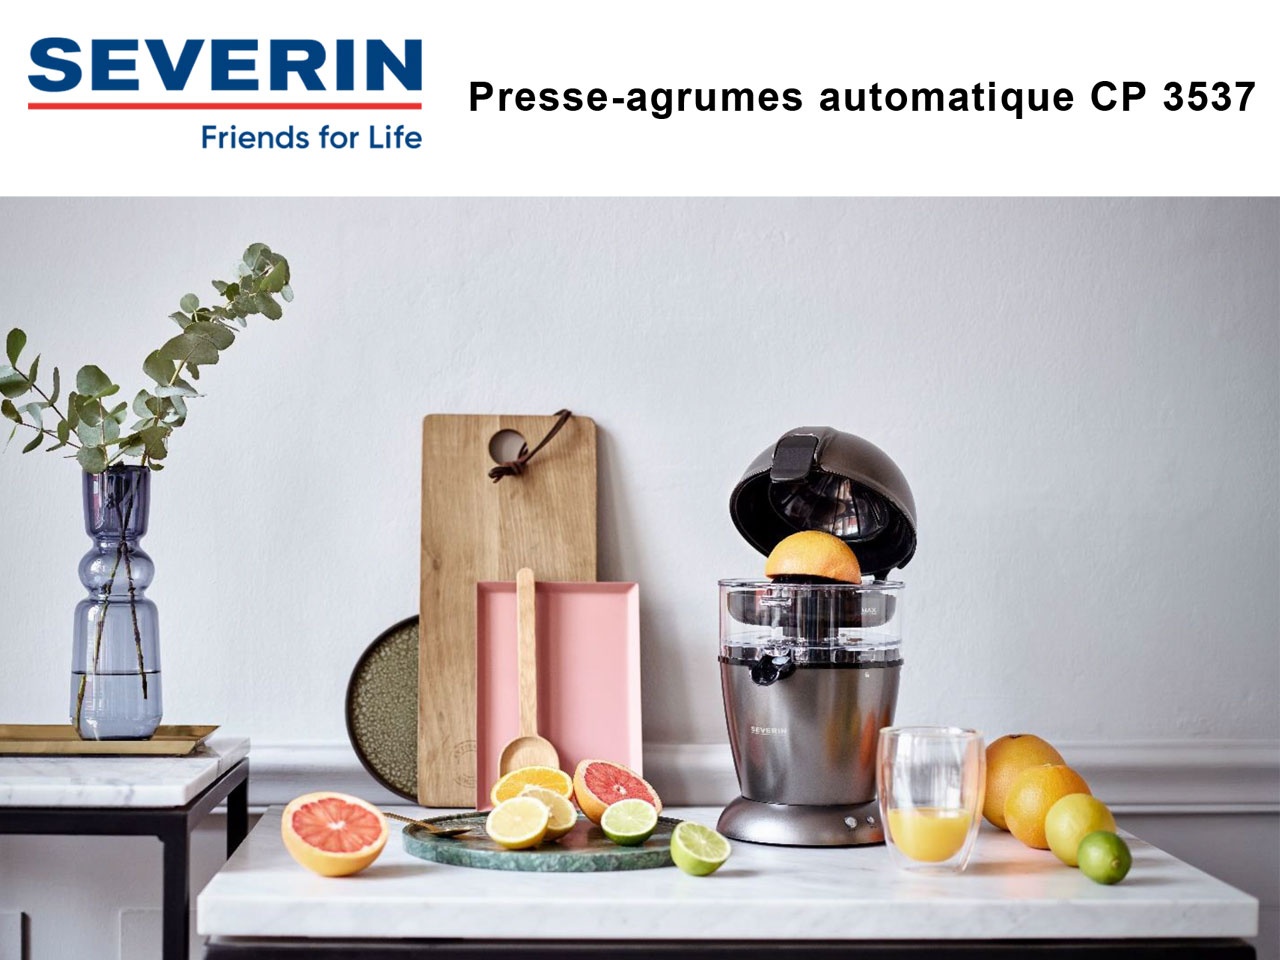 SEVERIN : son nouveau presse-agrumes automatique CP 3537,